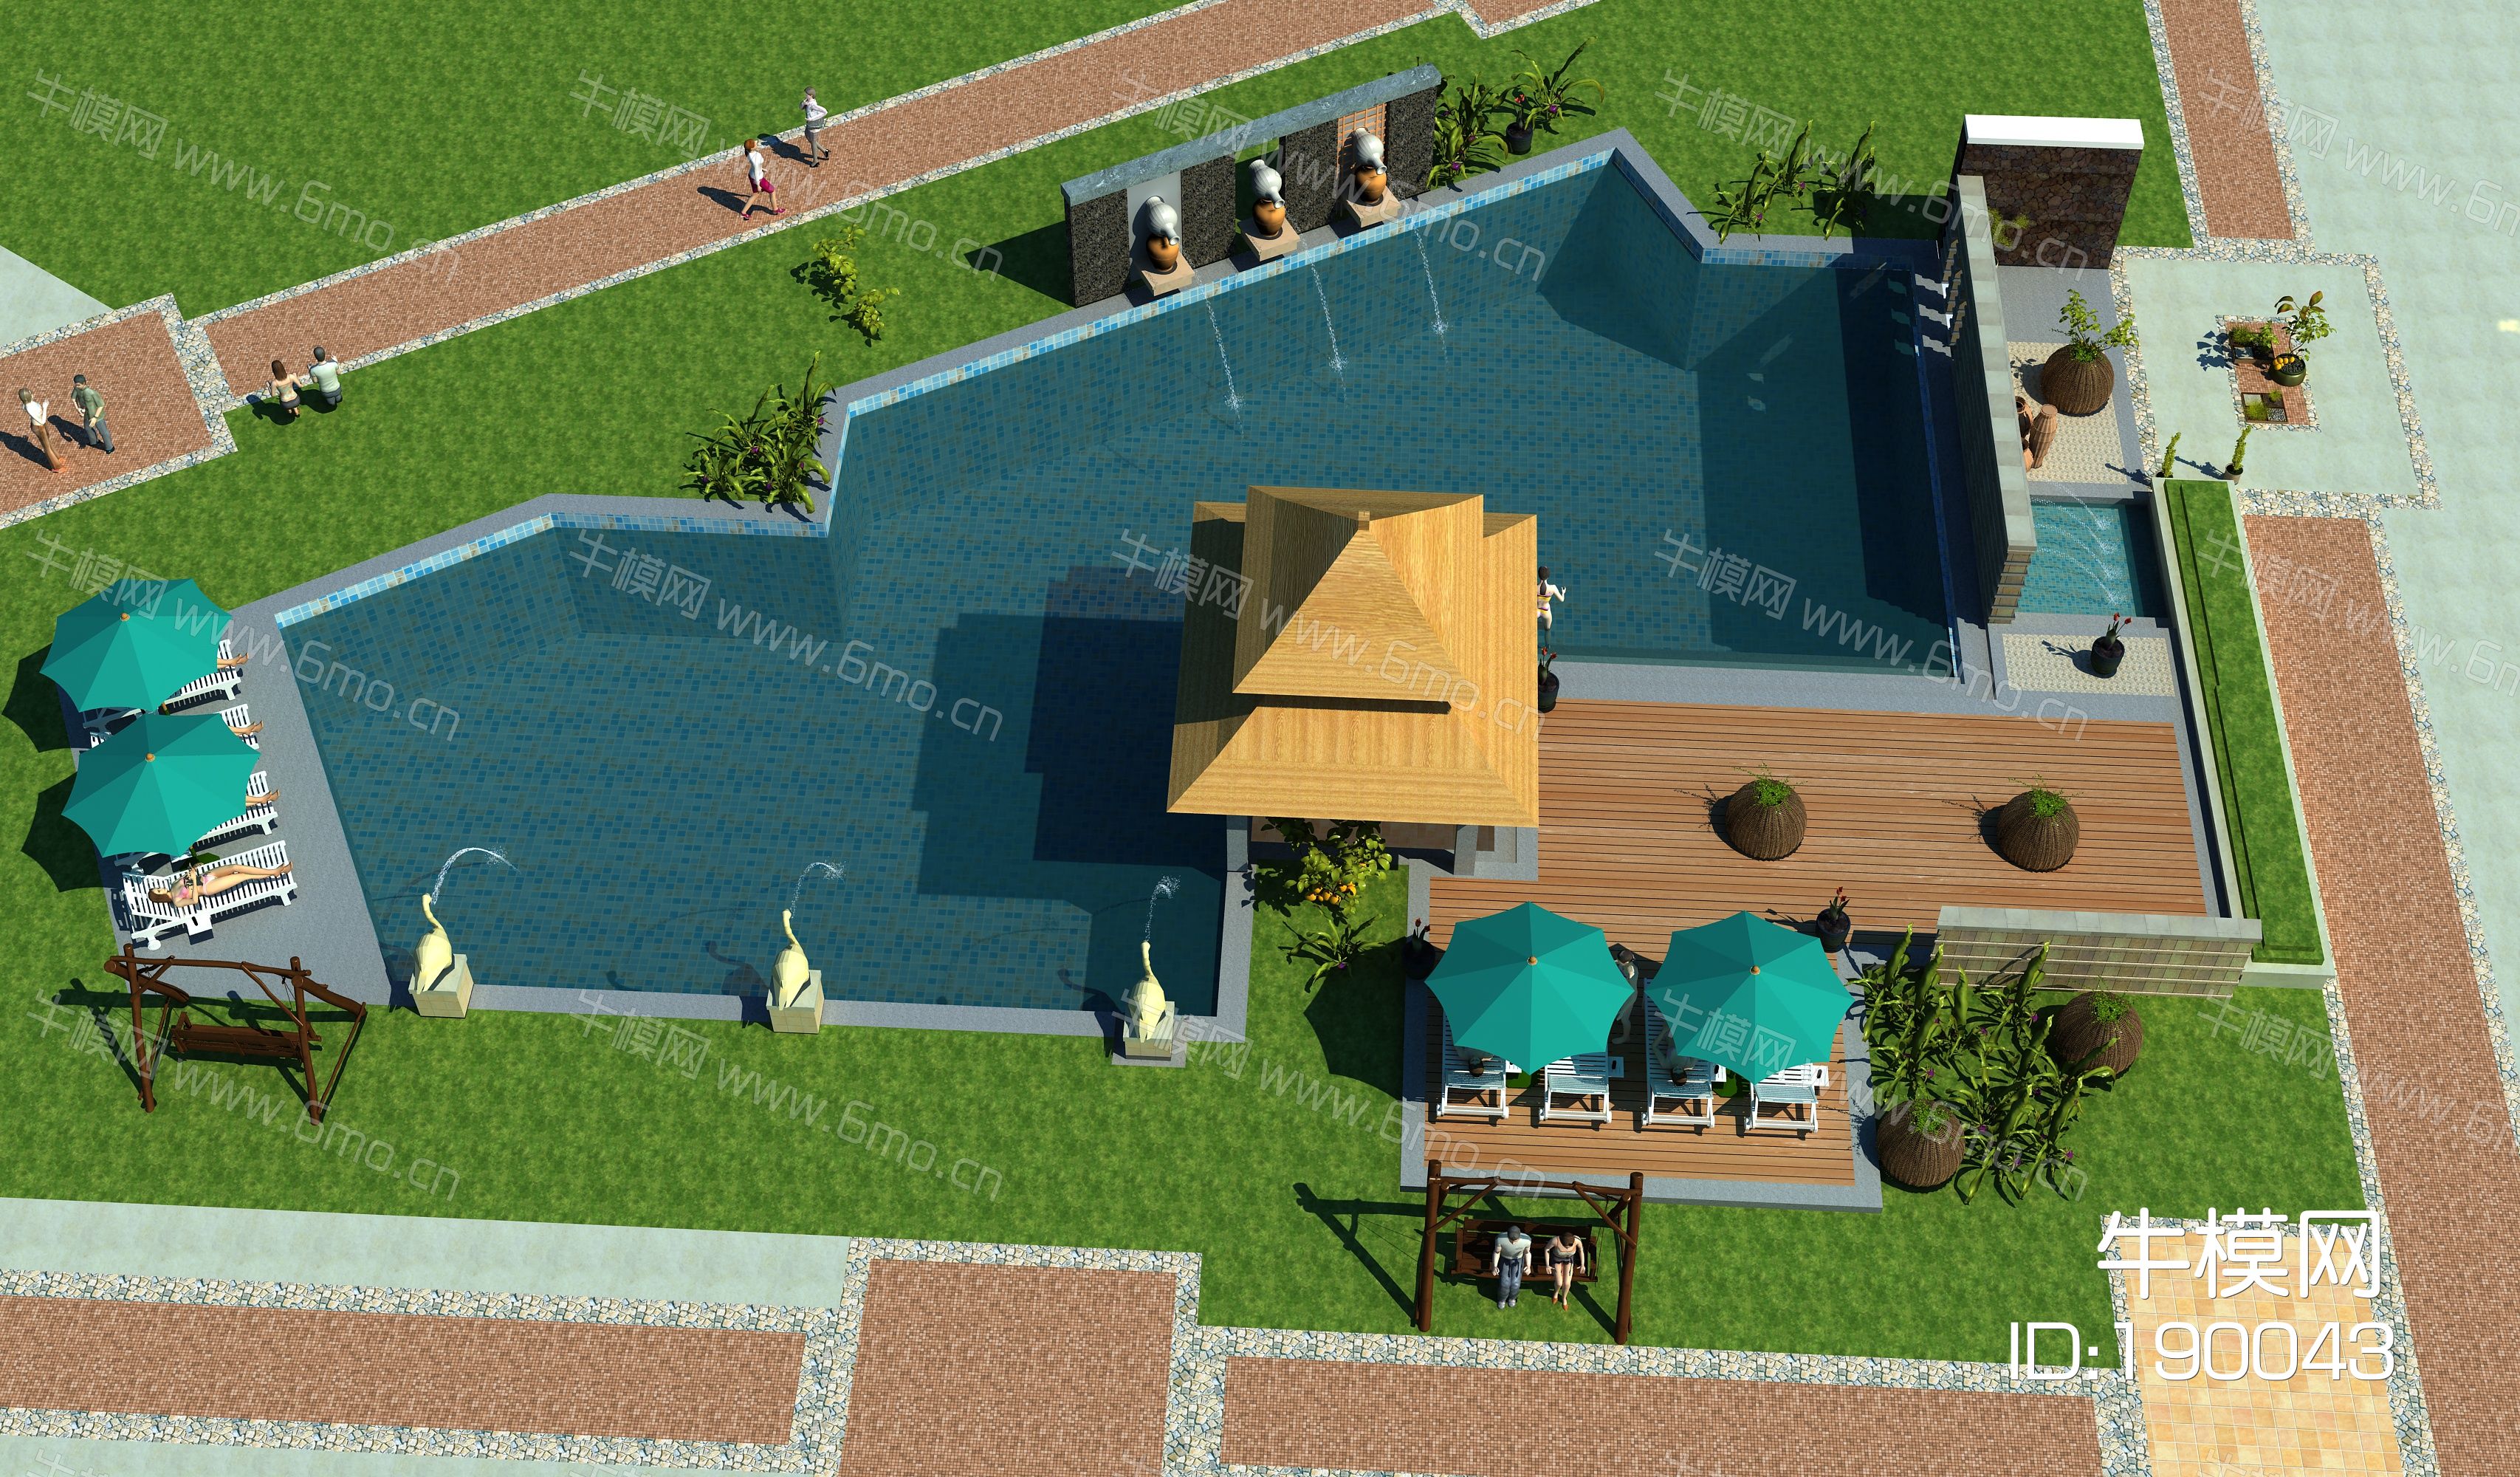 中式户外游泳池水上乐园 温泉人物晒太阳 泳池伞座 植物景观 园林喷水景观